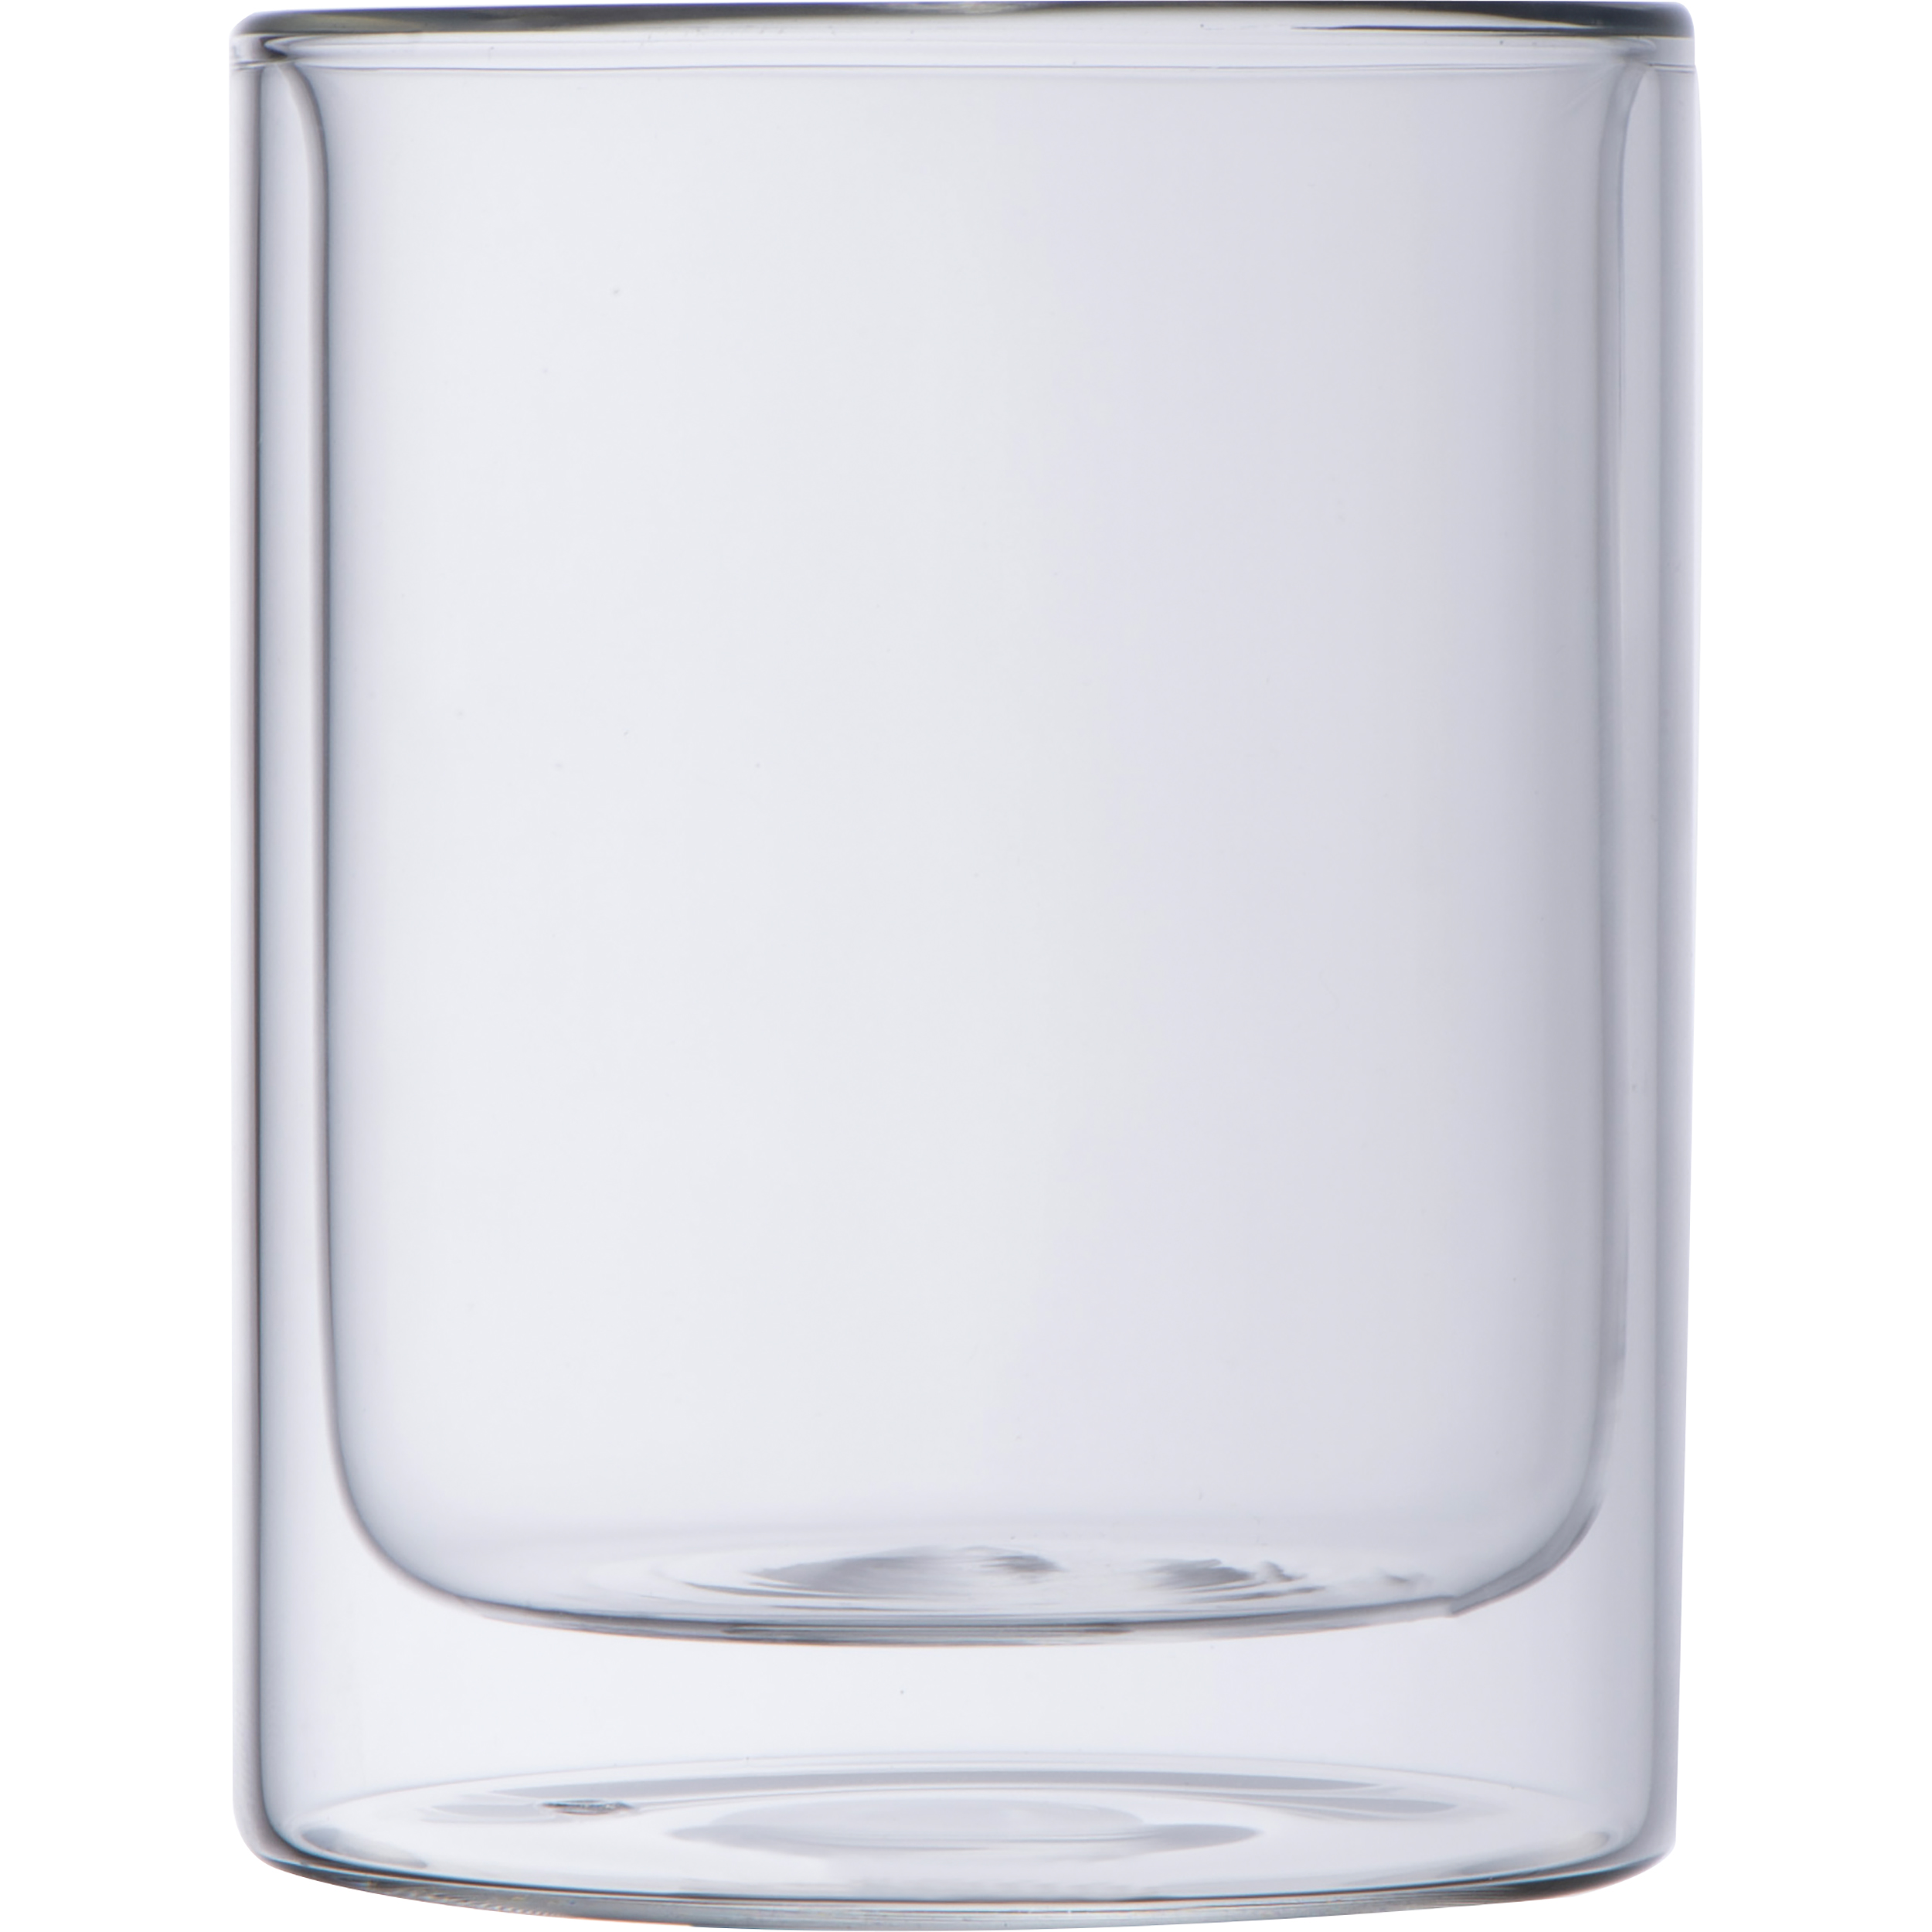 Dubbelwandig drinkglas 330 ml